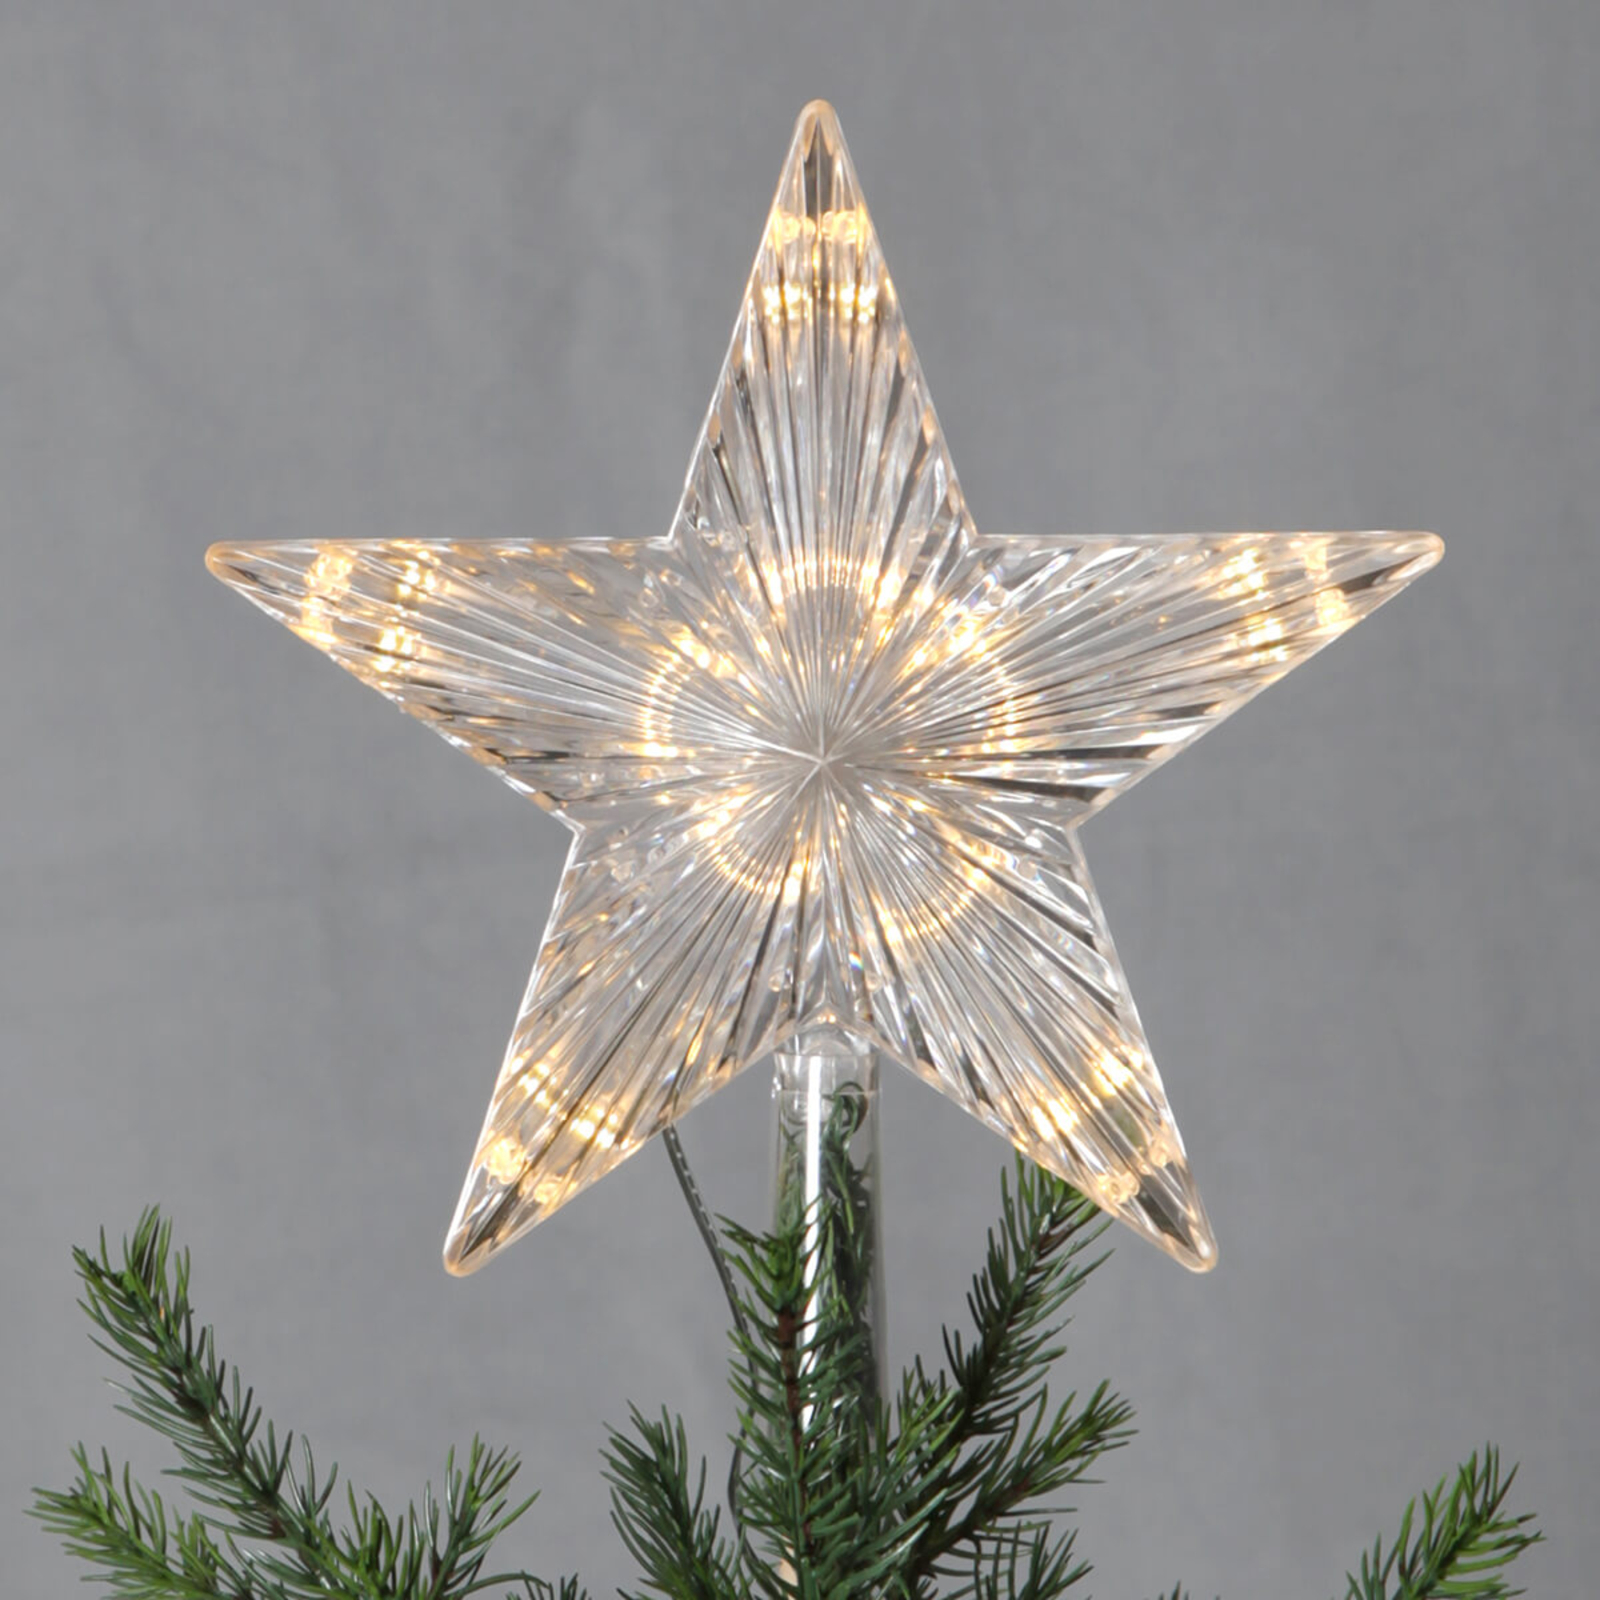 S plastovou hviezdou – LED vrchol stromu Topsy